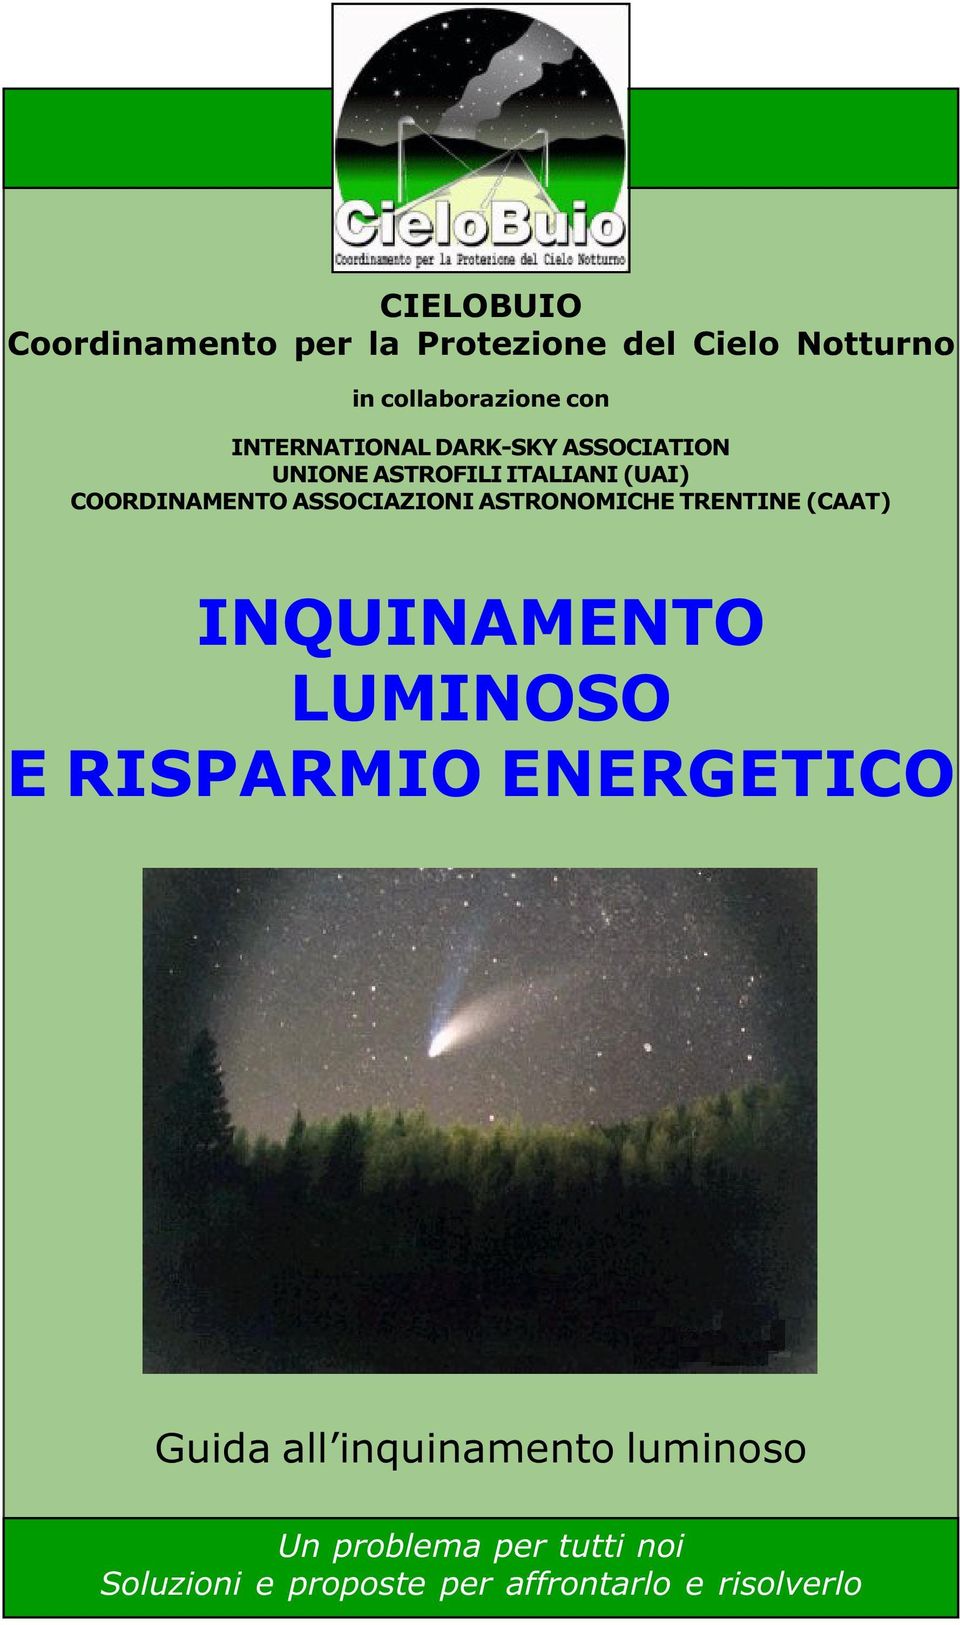 ASSOCIAZIONI ASTRONOMICHE TRENTINE (CAAT) INQUINAMENTO LUMINOSO E RISPARMIO ENERGETICO